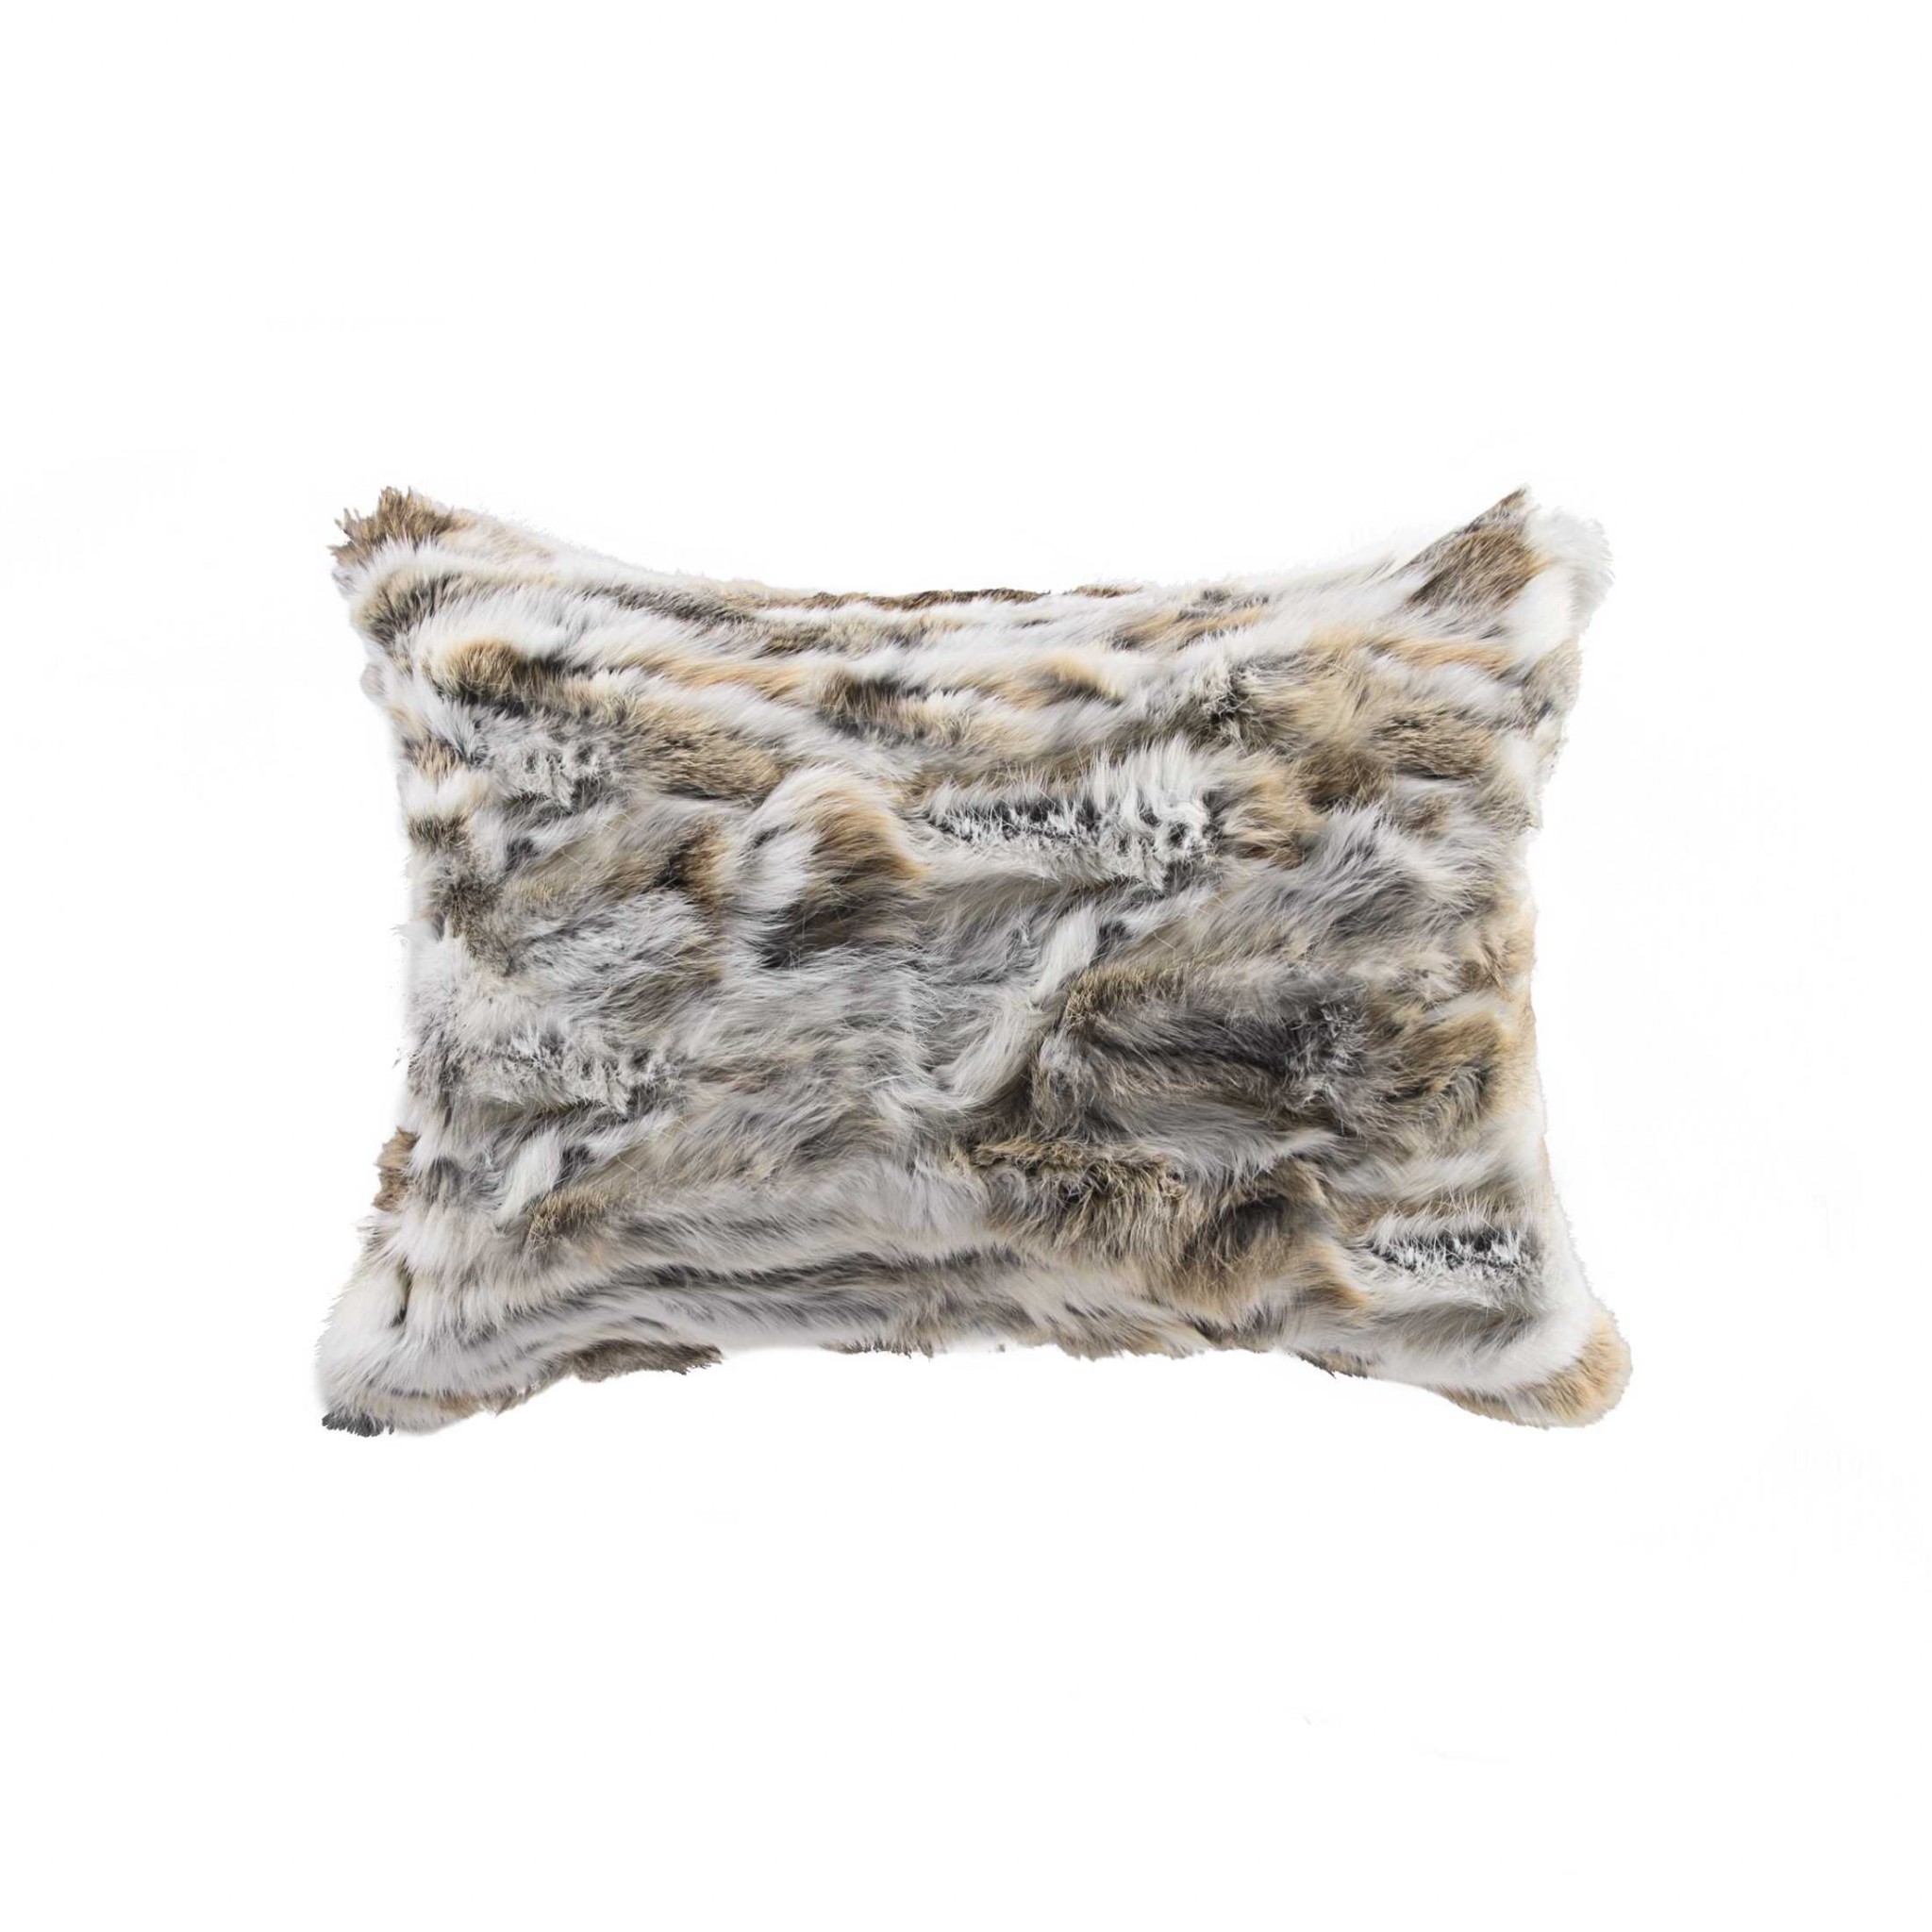 5" x 12" x 20" 100% Natural Rabbit Fur Tan & White Pillow